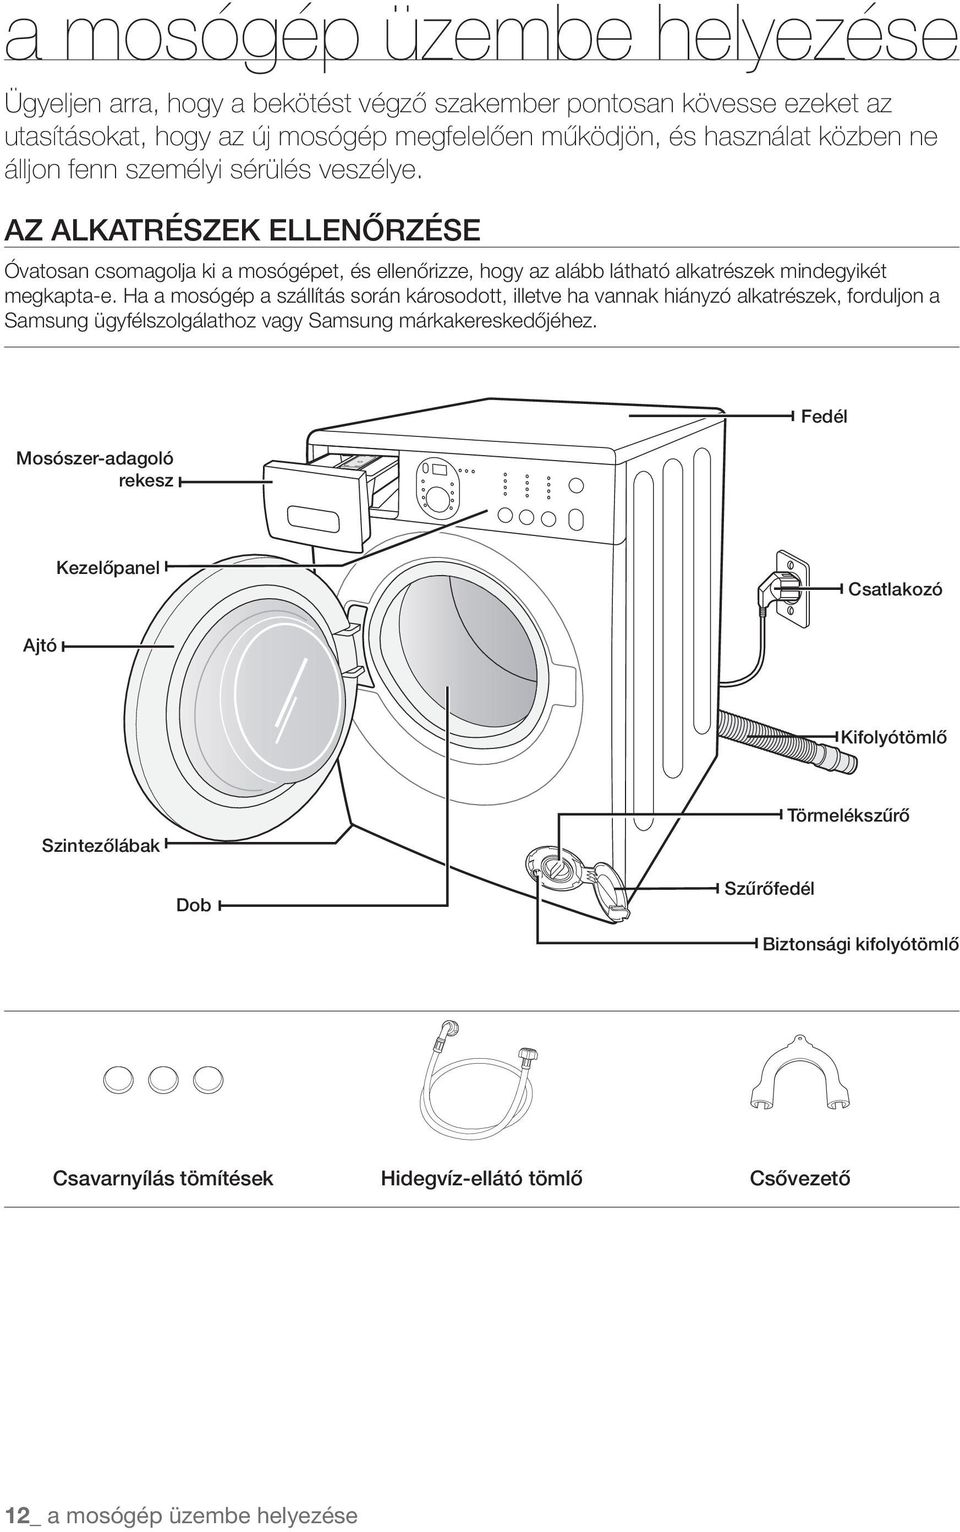 Ha a mosógép a szállítás során károsodott, illetve ha vannak hiányzó alkatrészek, forduljon a Samsung ügyfélszolgálathoz vagy Samsung márkakereskedőjéhez.